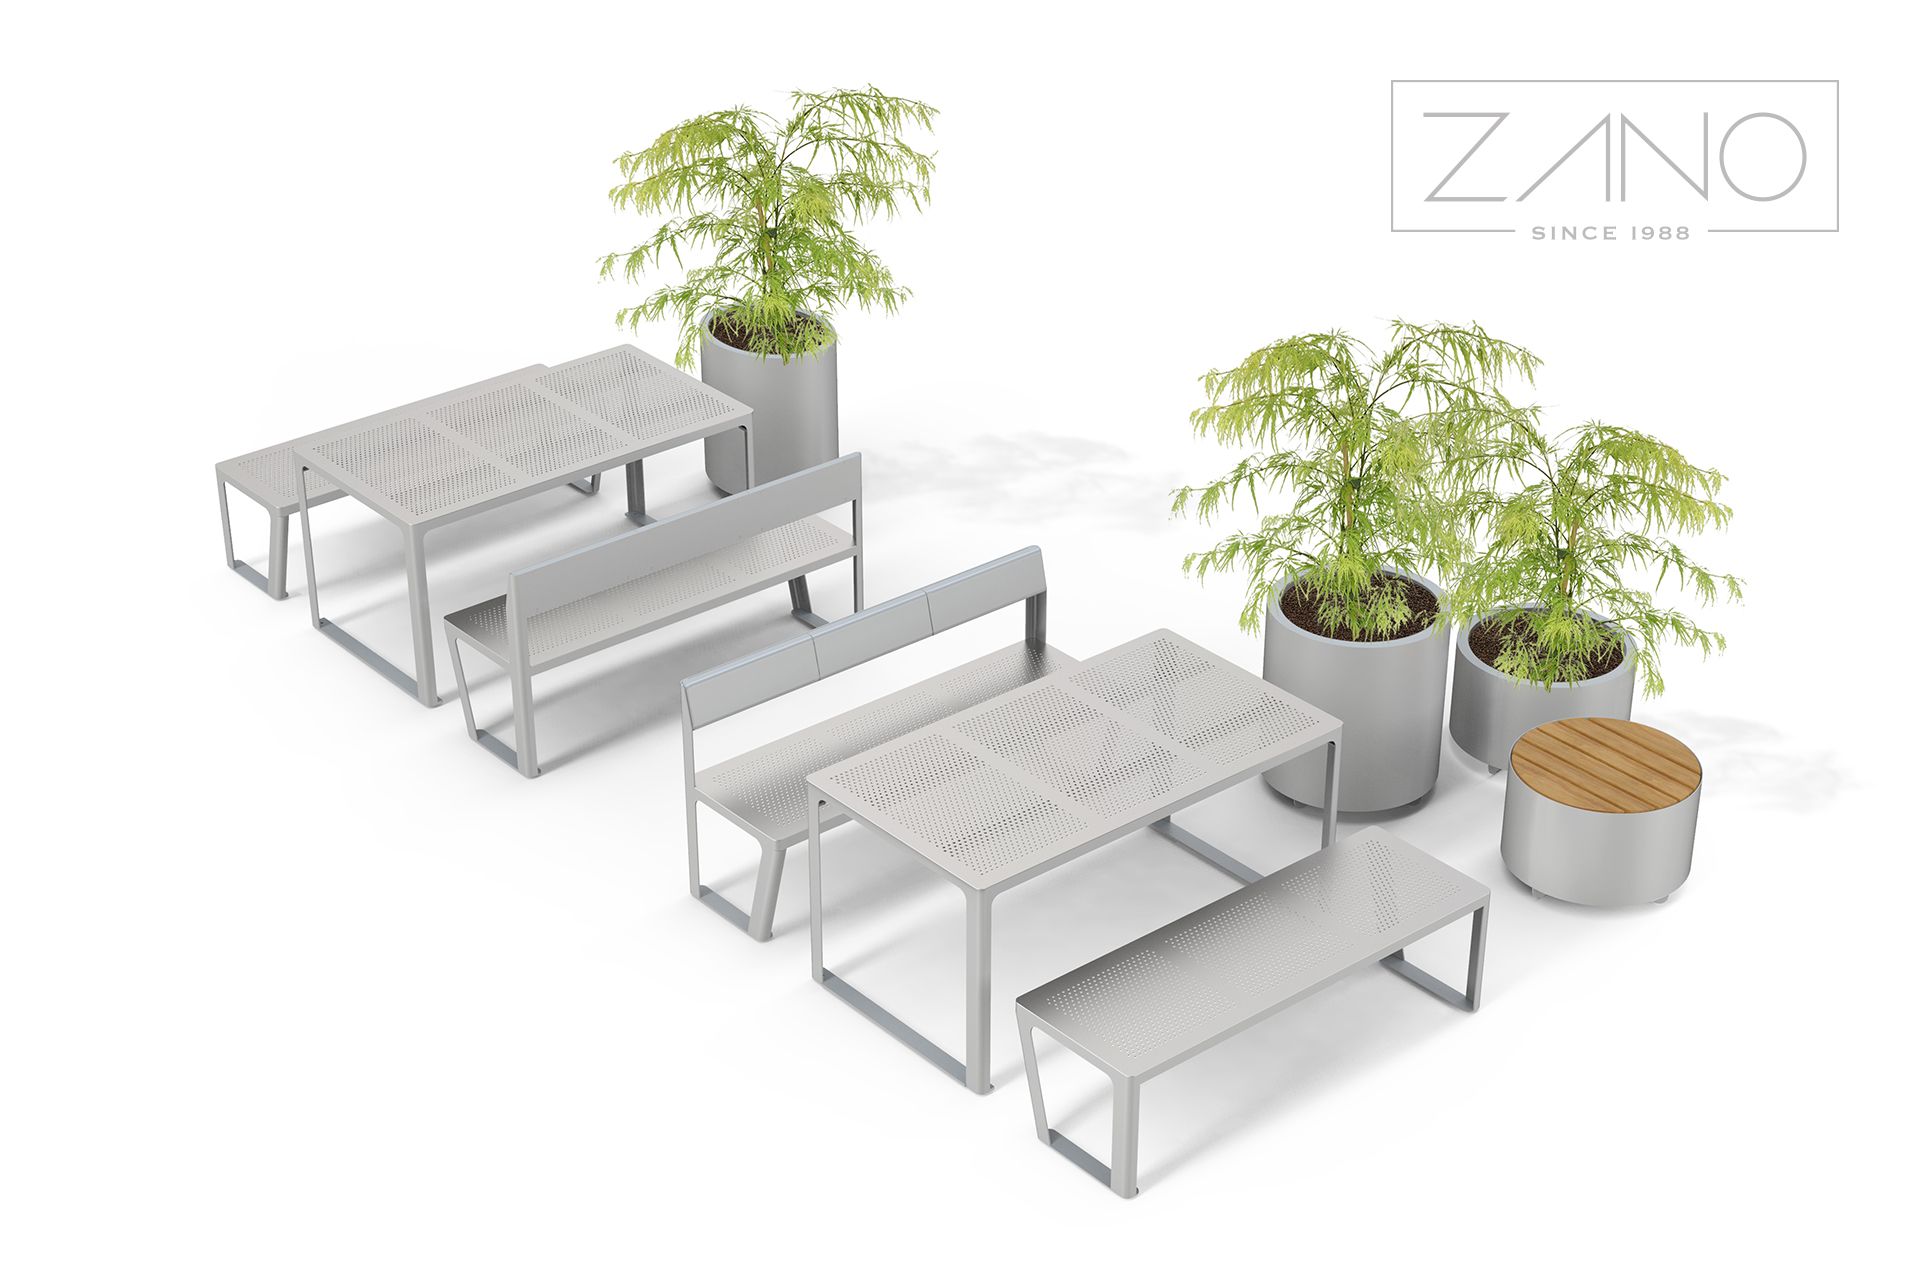 Mesa y bancos urbanos de zano urban furniture